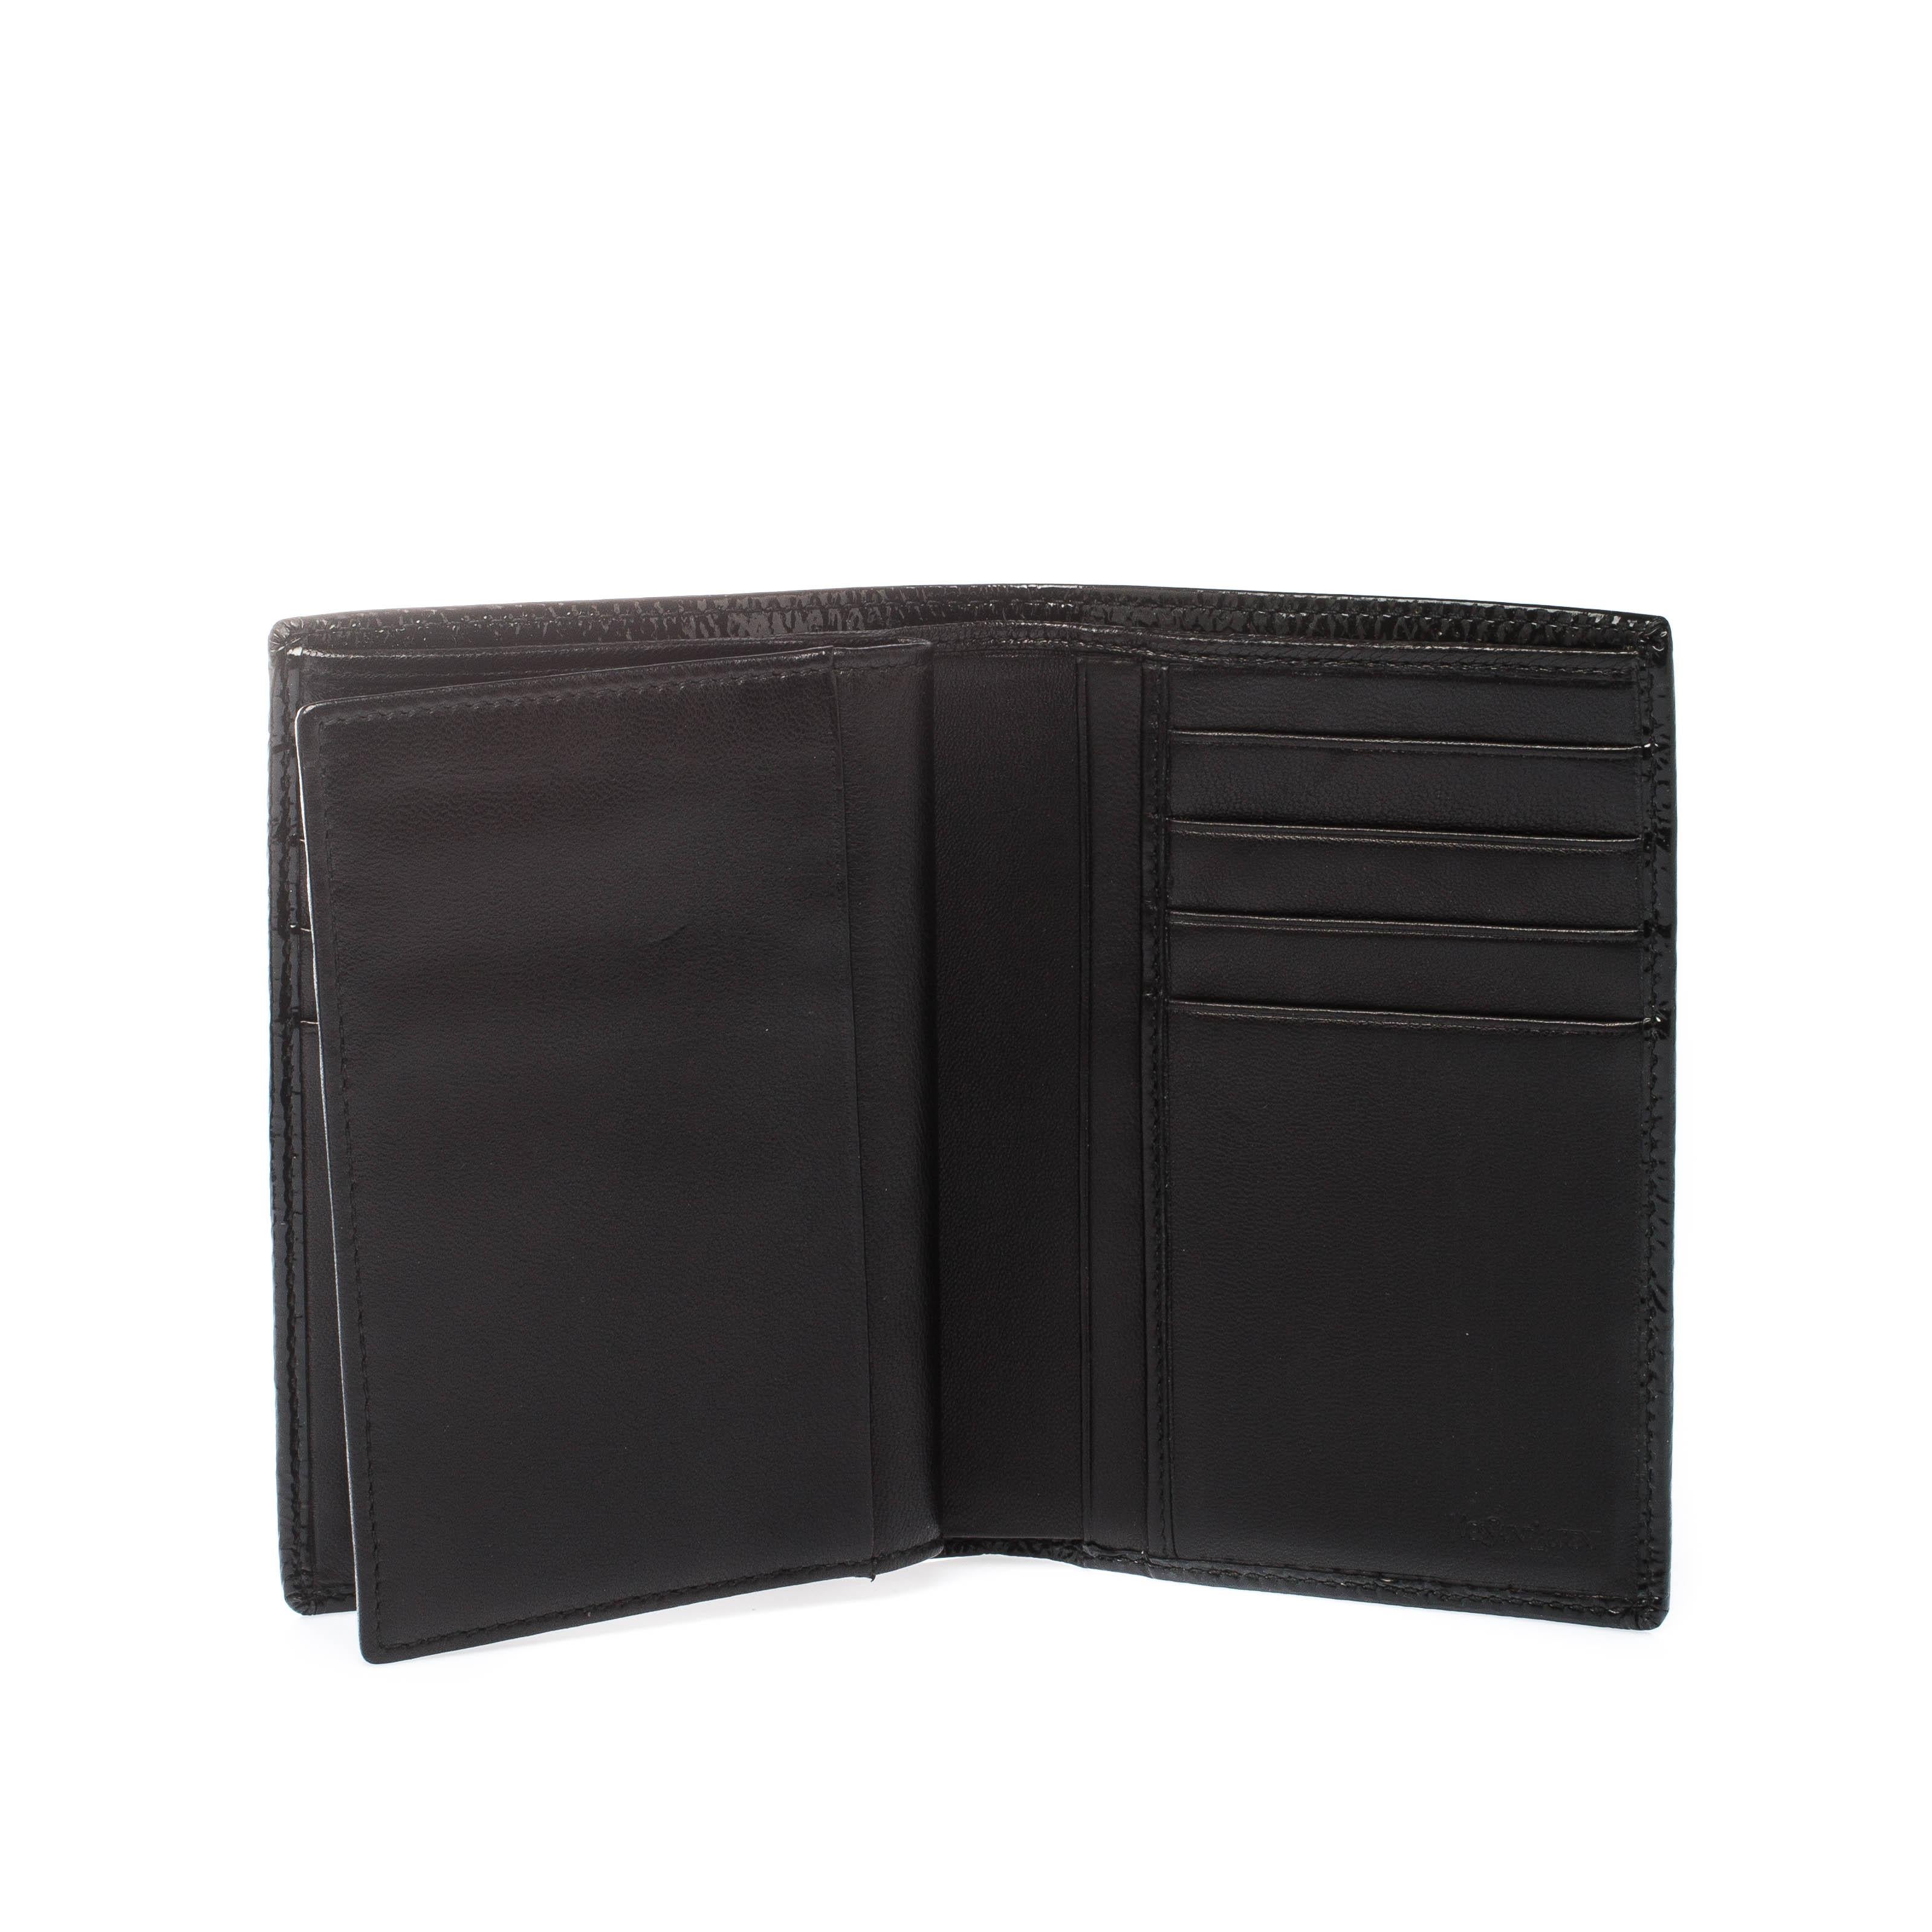 Saint Laurent Paris Black Patent Leather Bifold Wallet 4